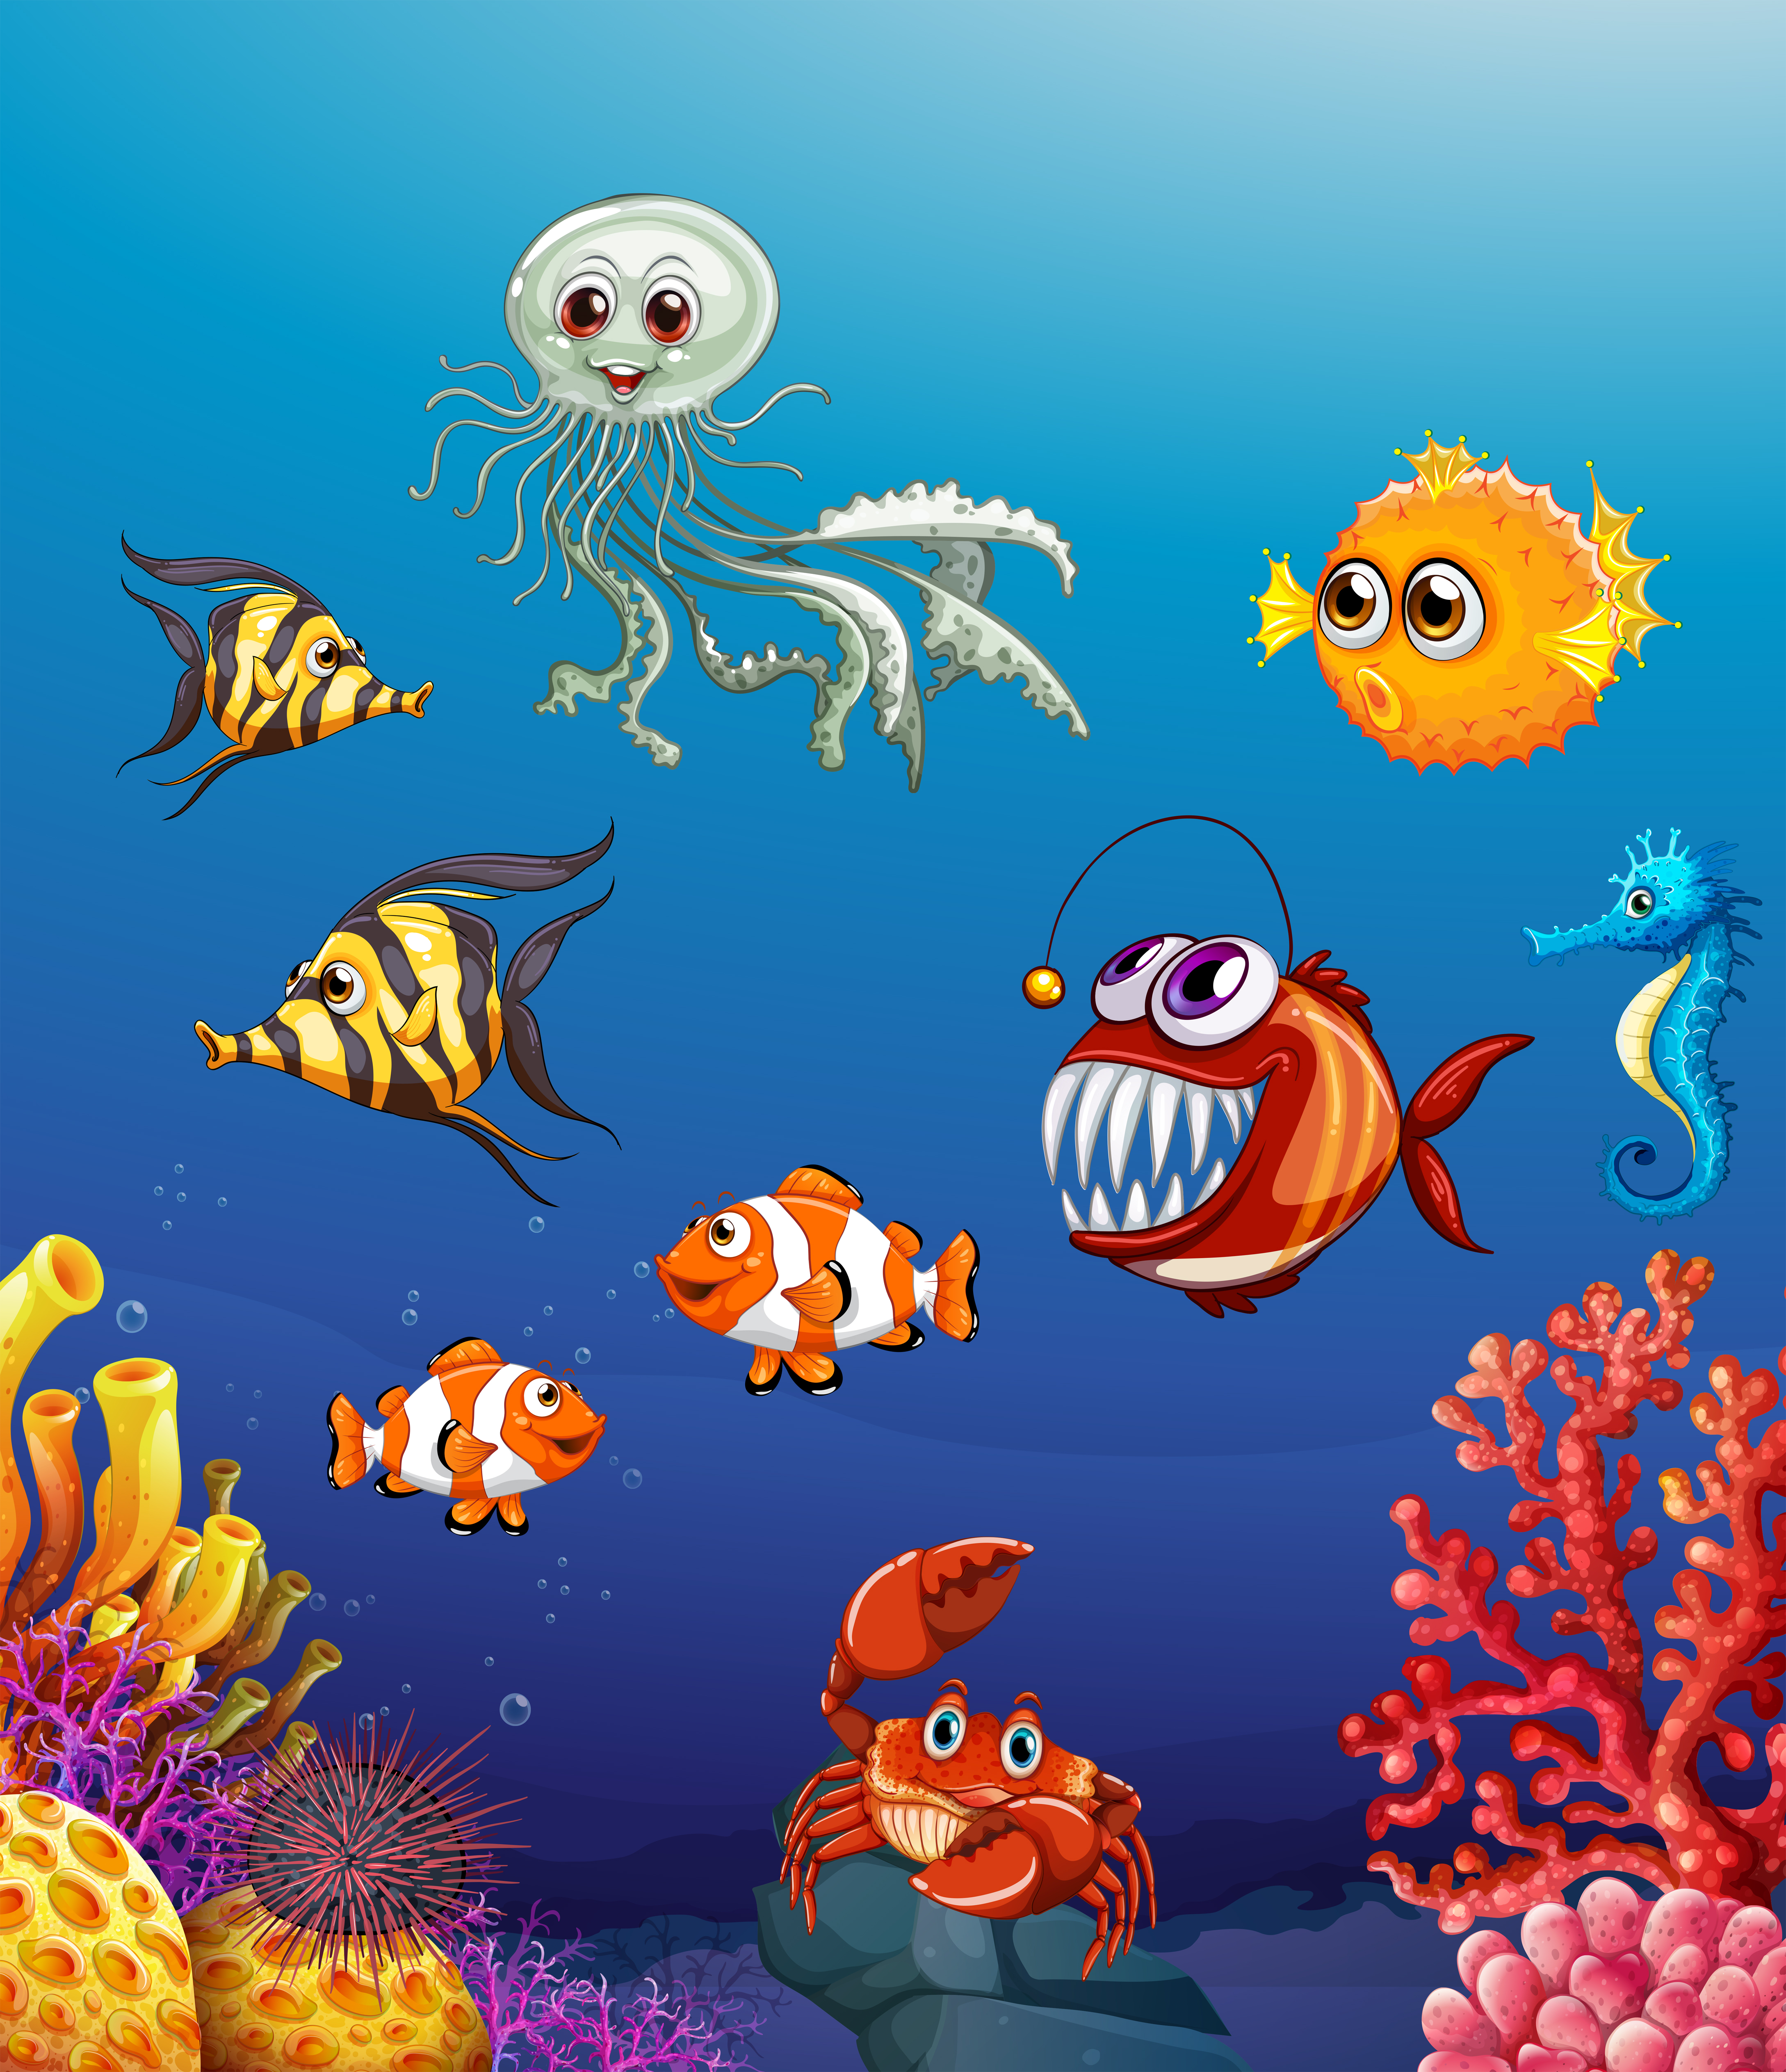 Scene with sea animals under the ocean 414922 Vector Art at Vecteezy